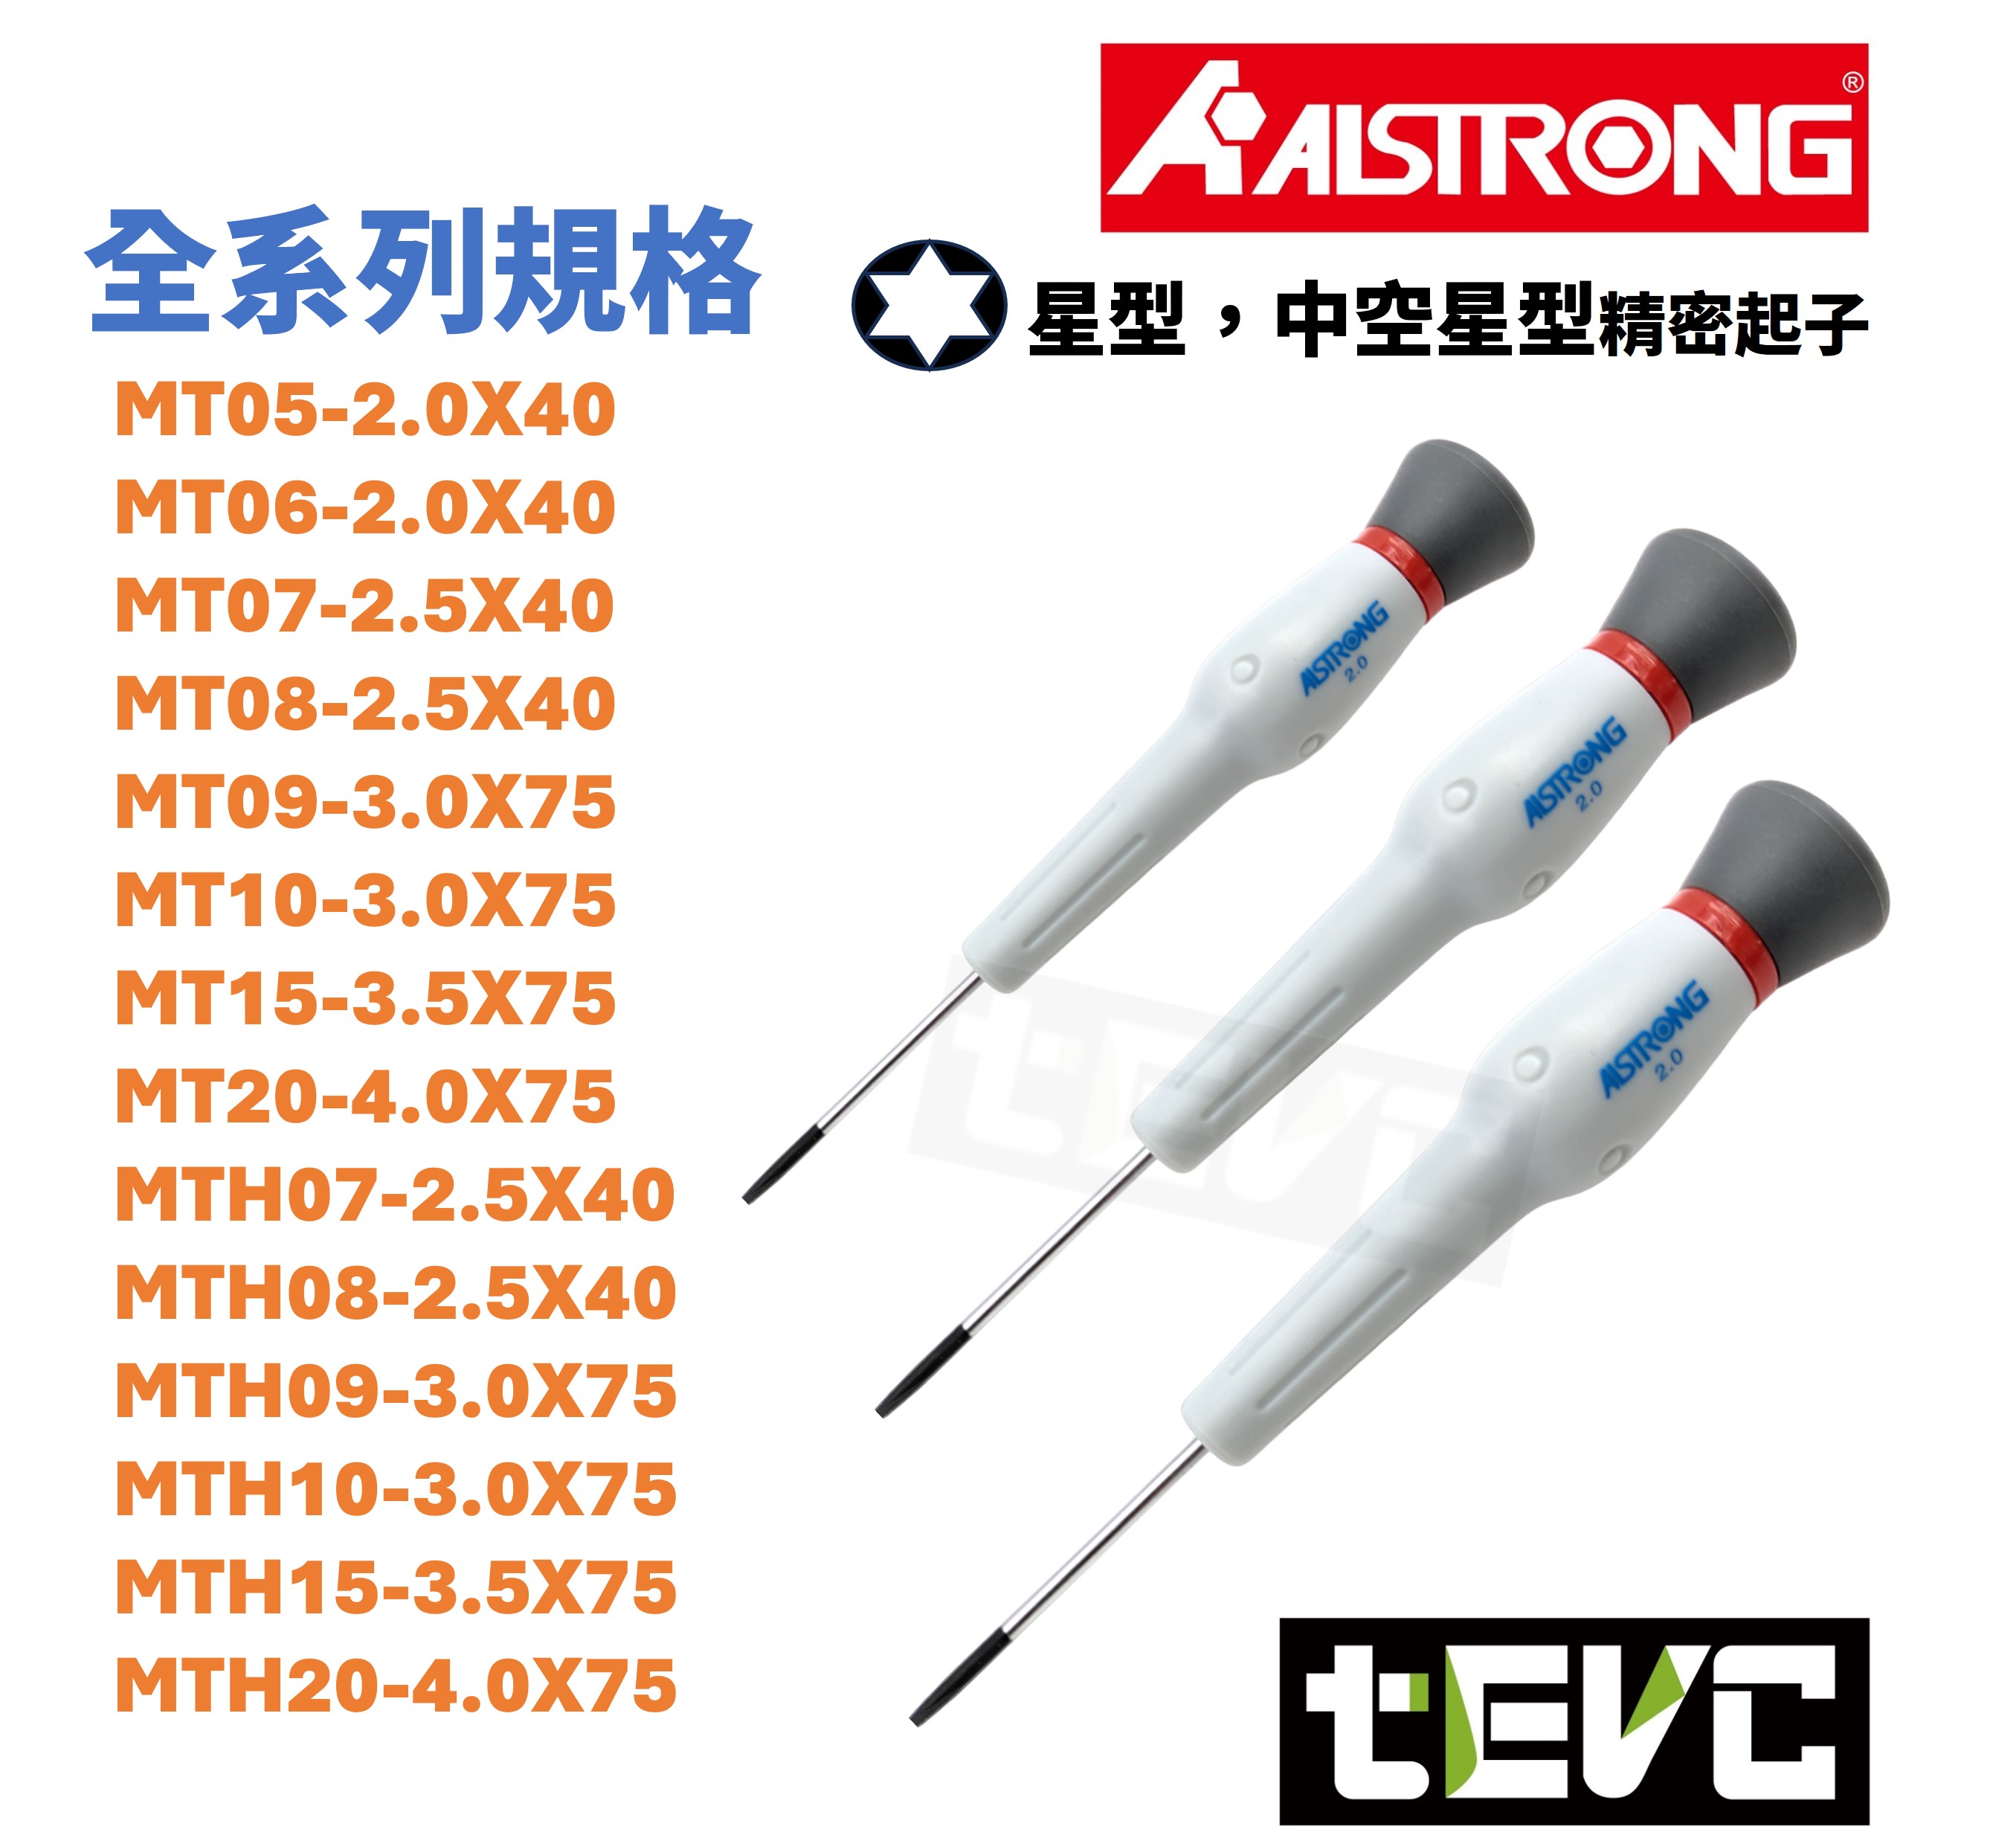 《tevc》台灣製 ALSTRONG 含稅 發票 精密 起子 星型 電子 螺絲起子 維修 精密作業用 旋轉頭 防鏽處理